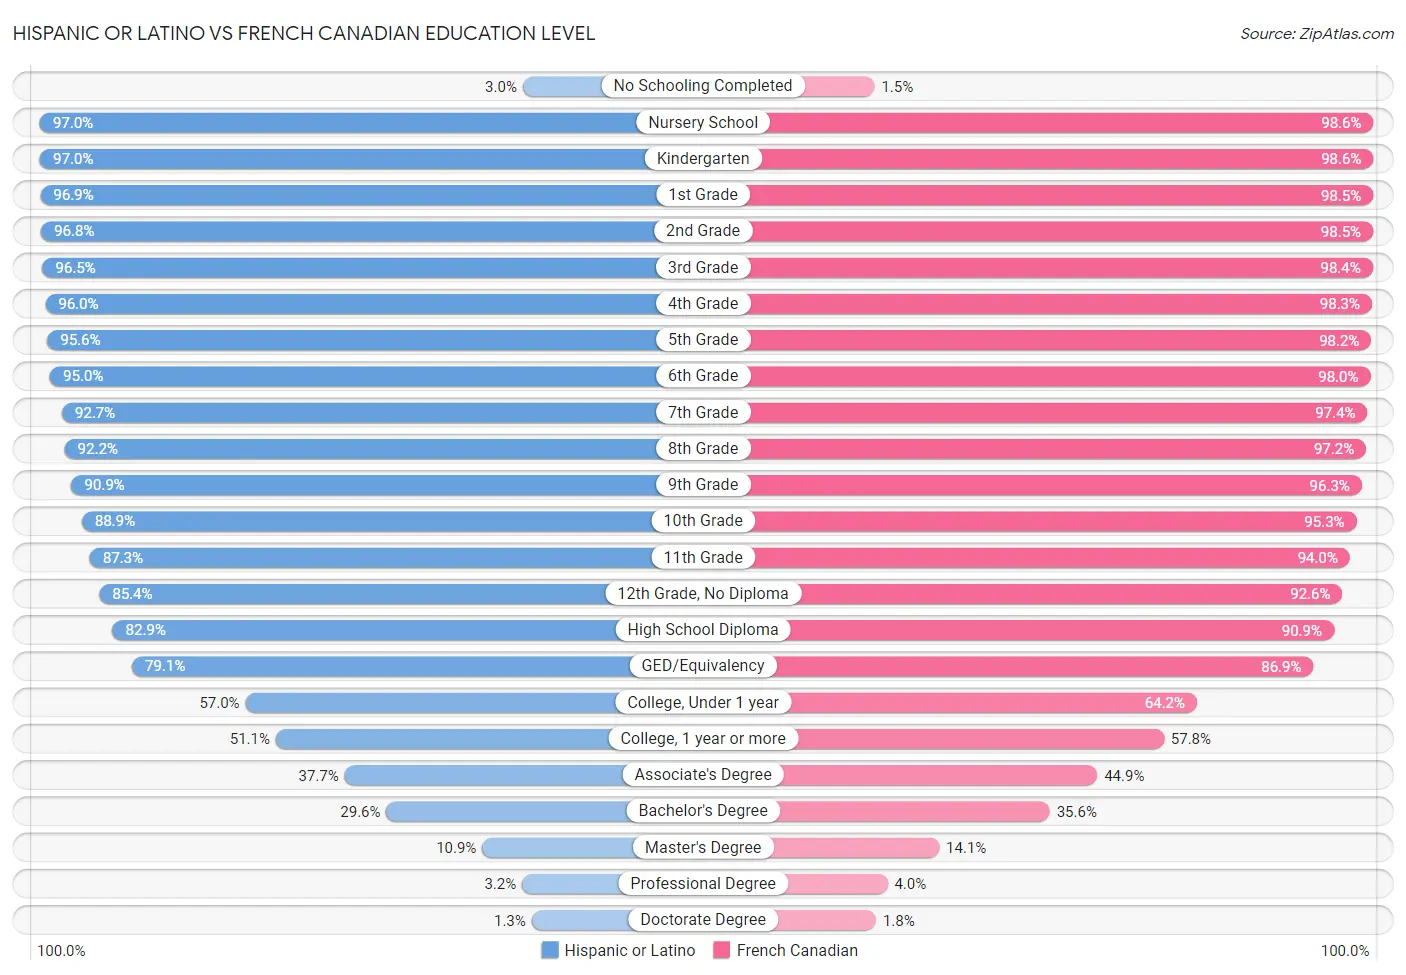 Hispanic or Latino vs French Canadian Education Level